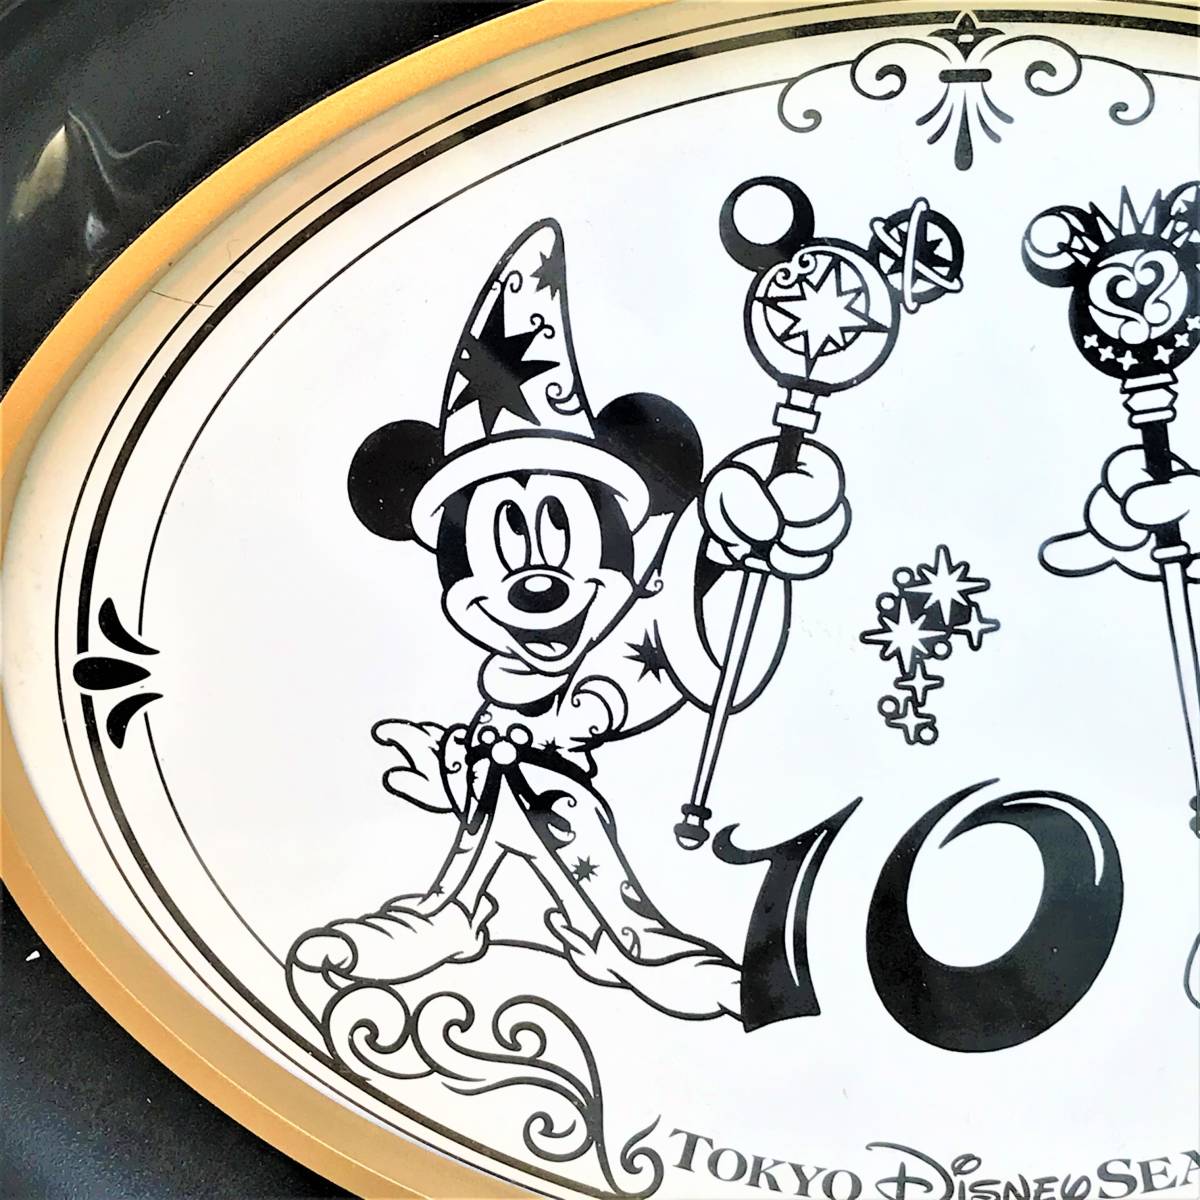 レア ディズニーシー開園10周年記念 ミッキーマウス ミニーマウス Micky Mouse 切り絵風 影絵 壁掛け 額縁 Disney Tds ディズニー 売買されたオークション情報 Yahooの商品情報をアーカイブ公開 オークファン Aucfan Com